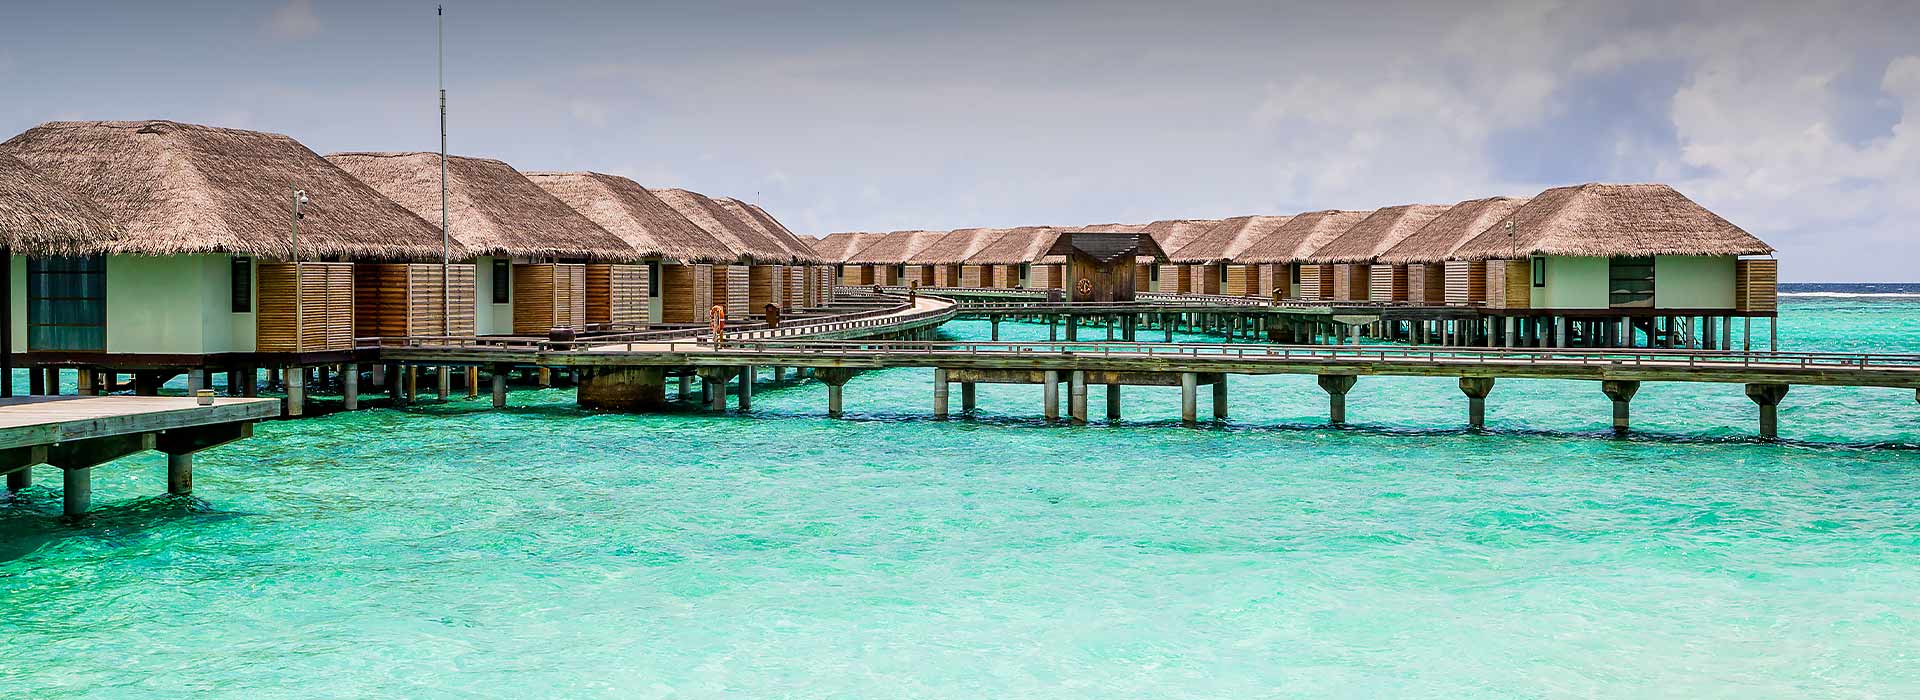 Atolls of Maldives